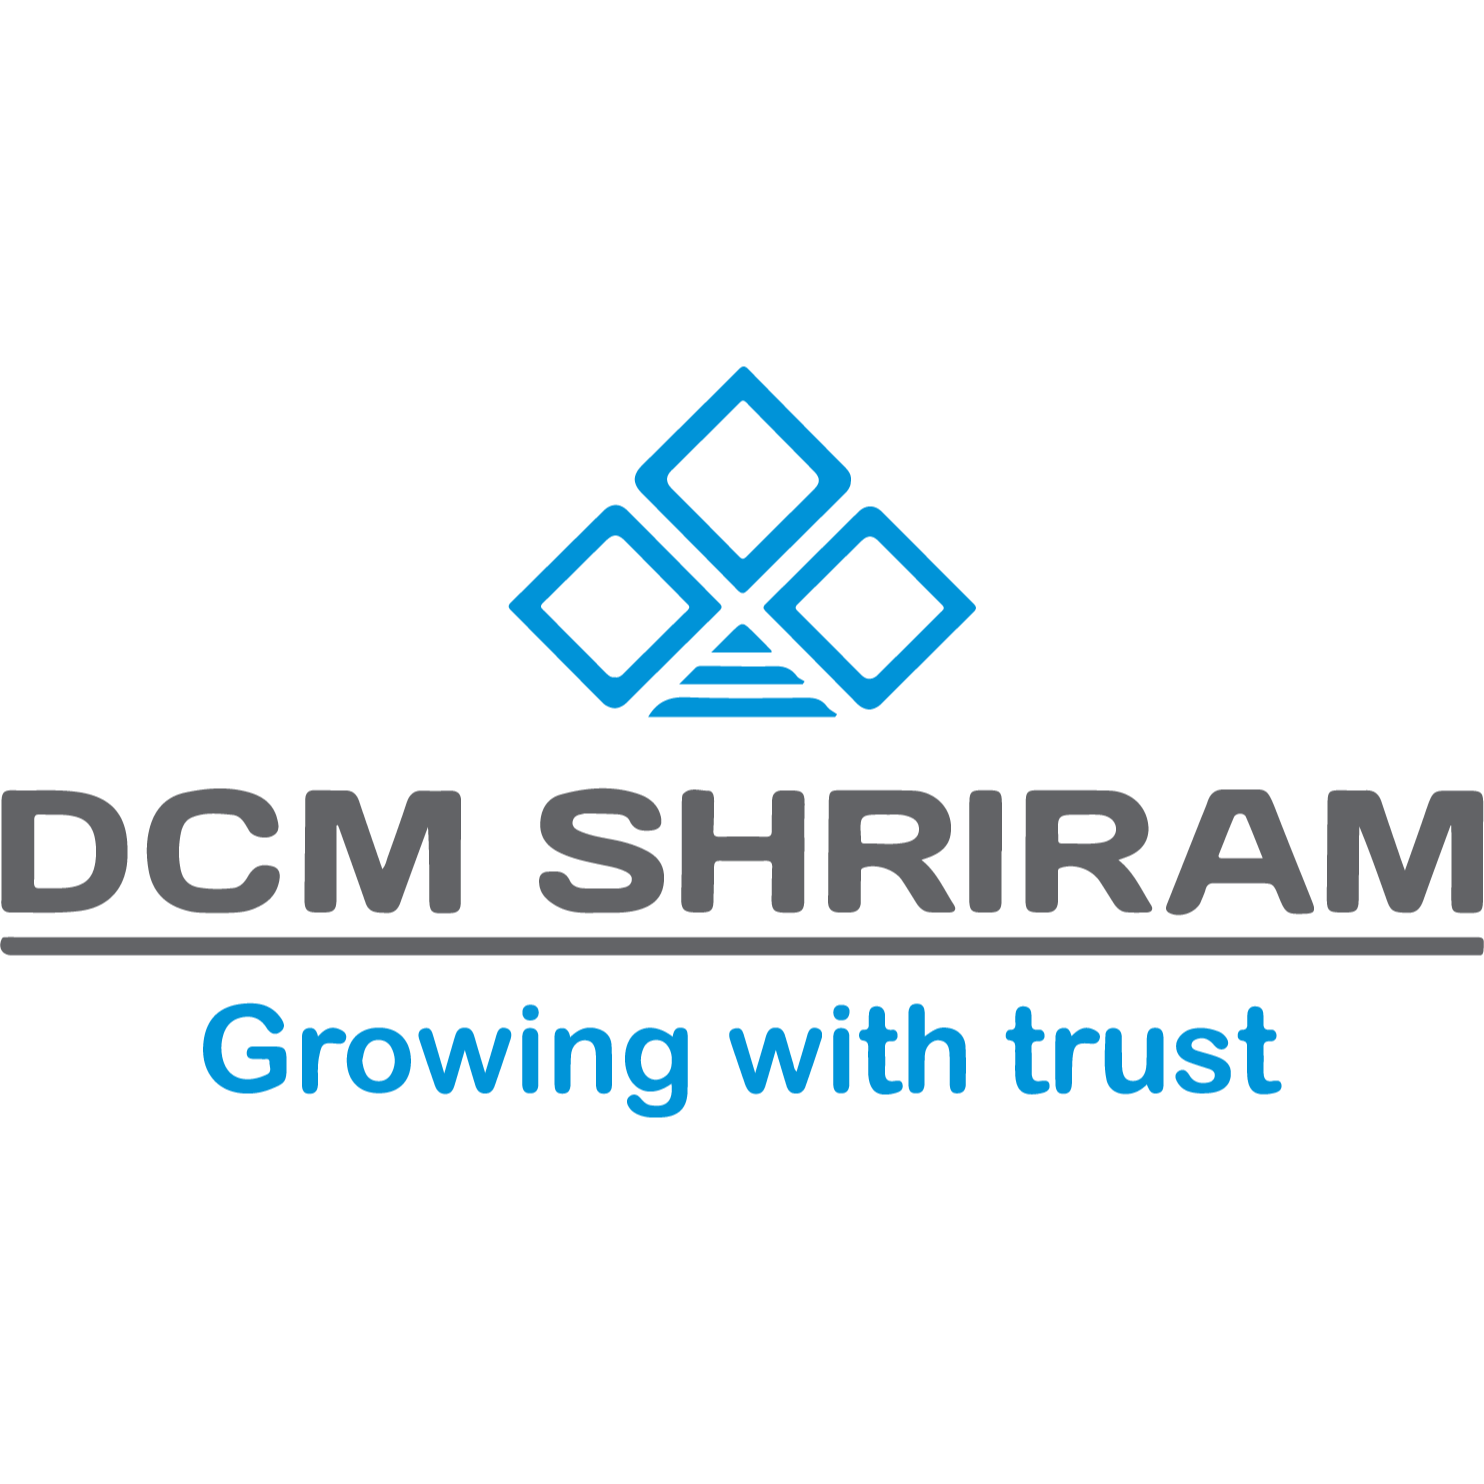 DCM SHRIRAM